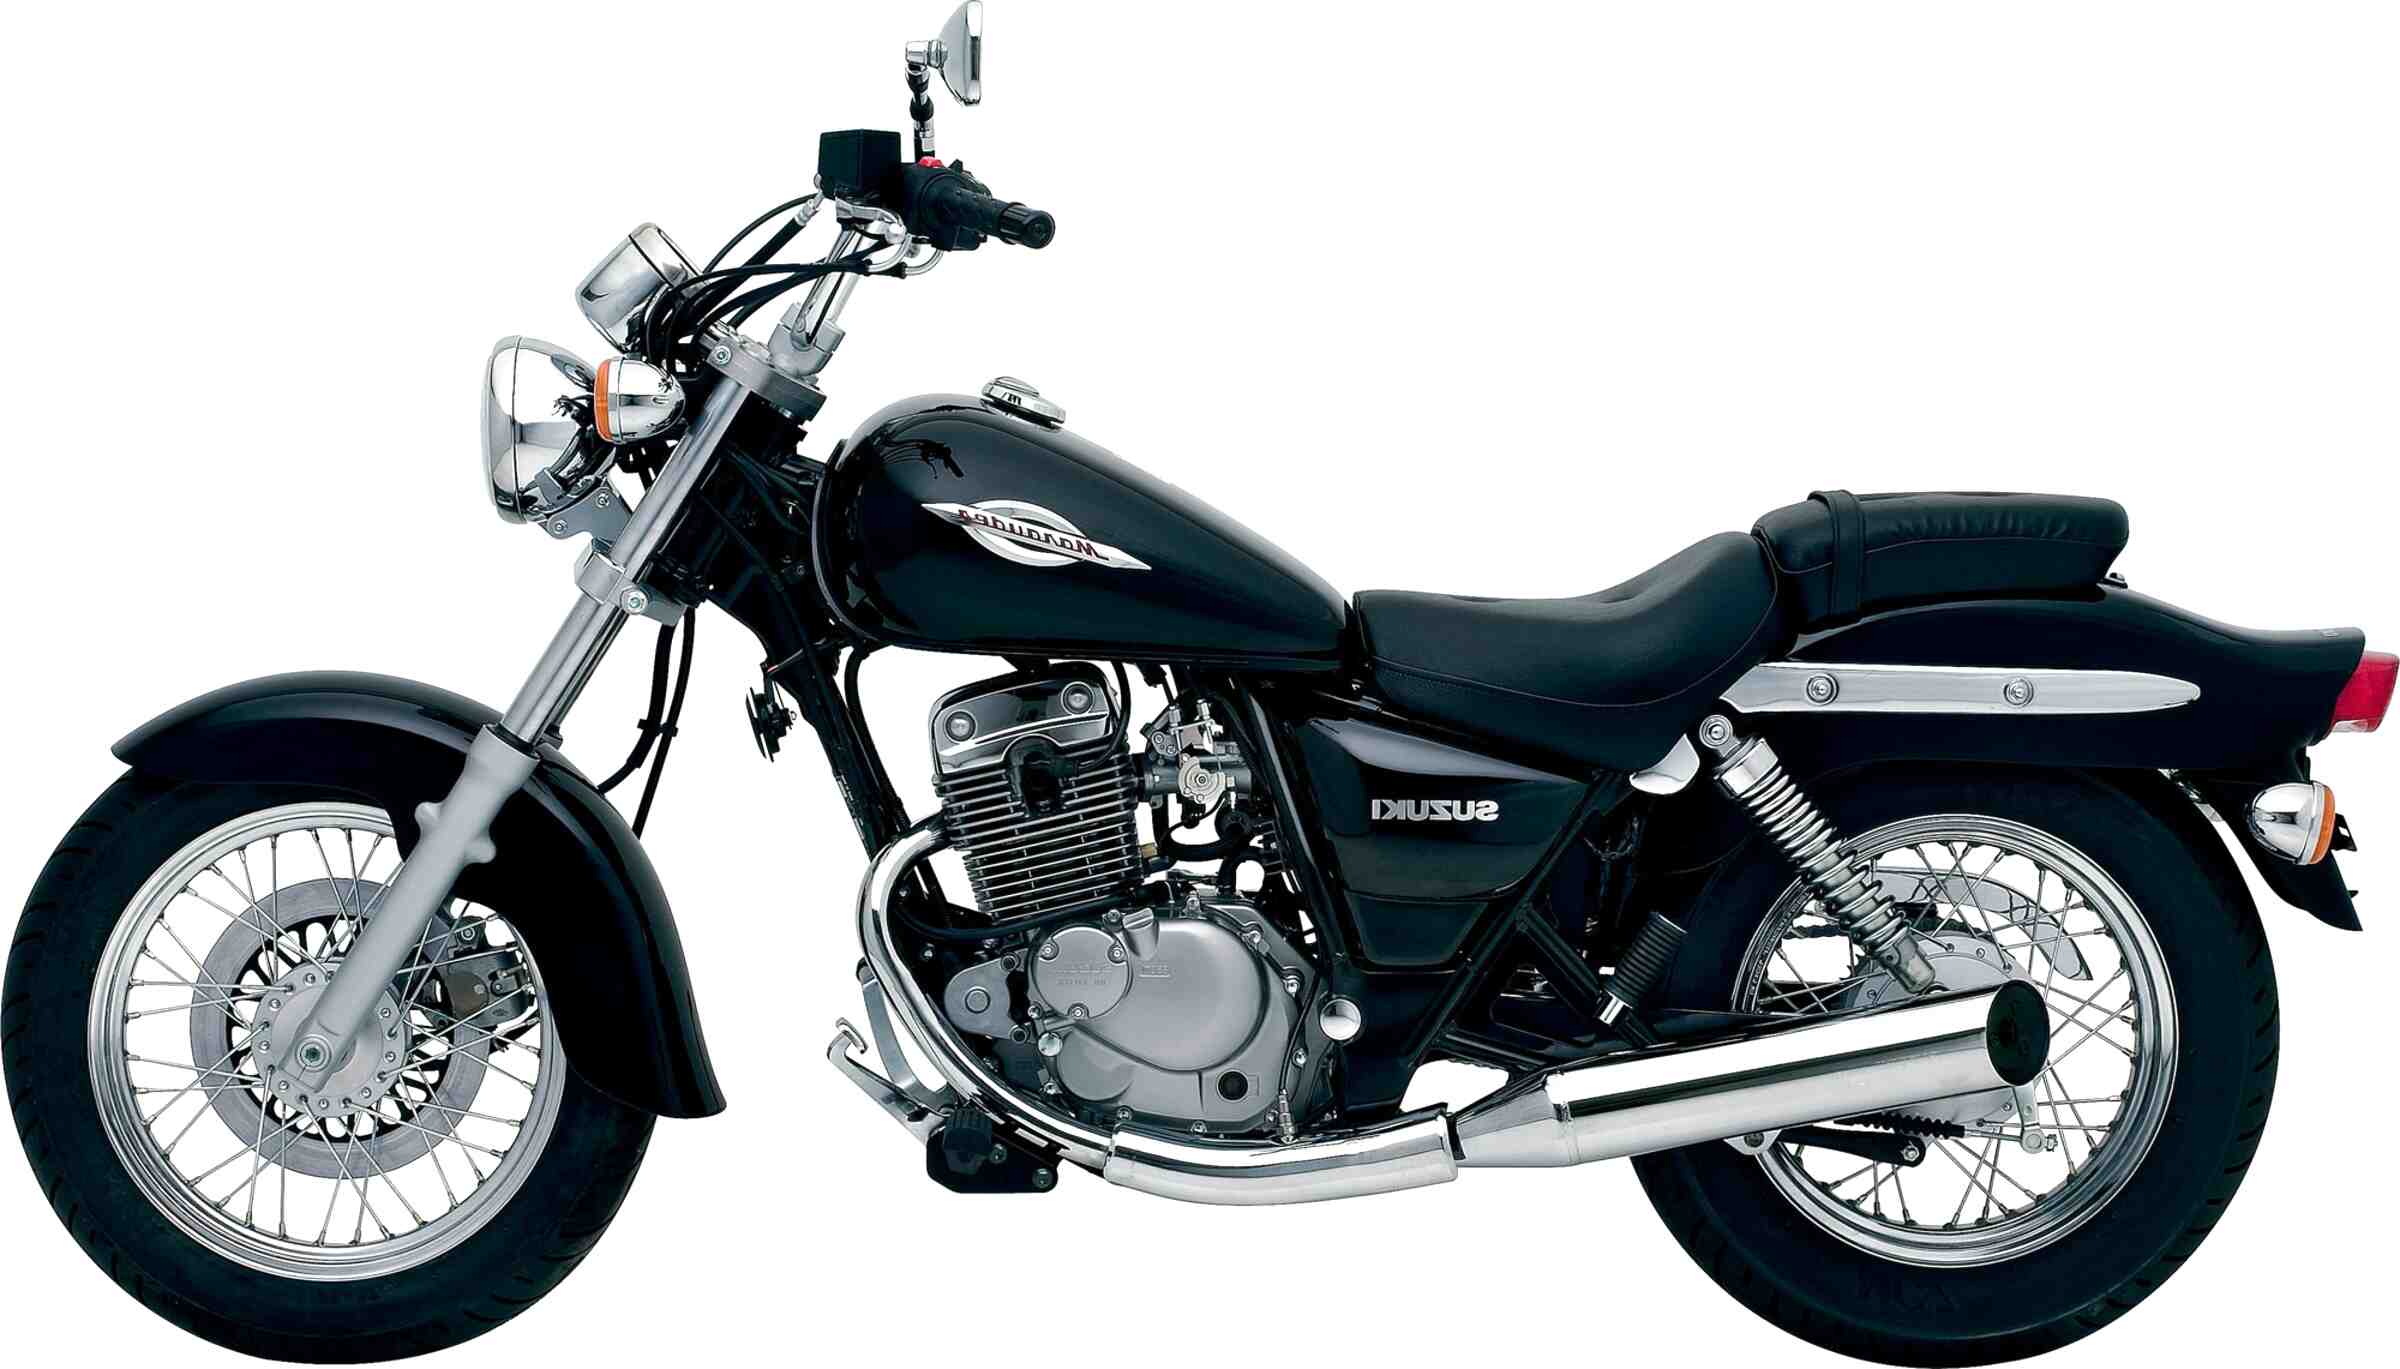 Suzuki Marauder 125 Motorcycle for sale in UK | 58 used Suzuki Marauder ...